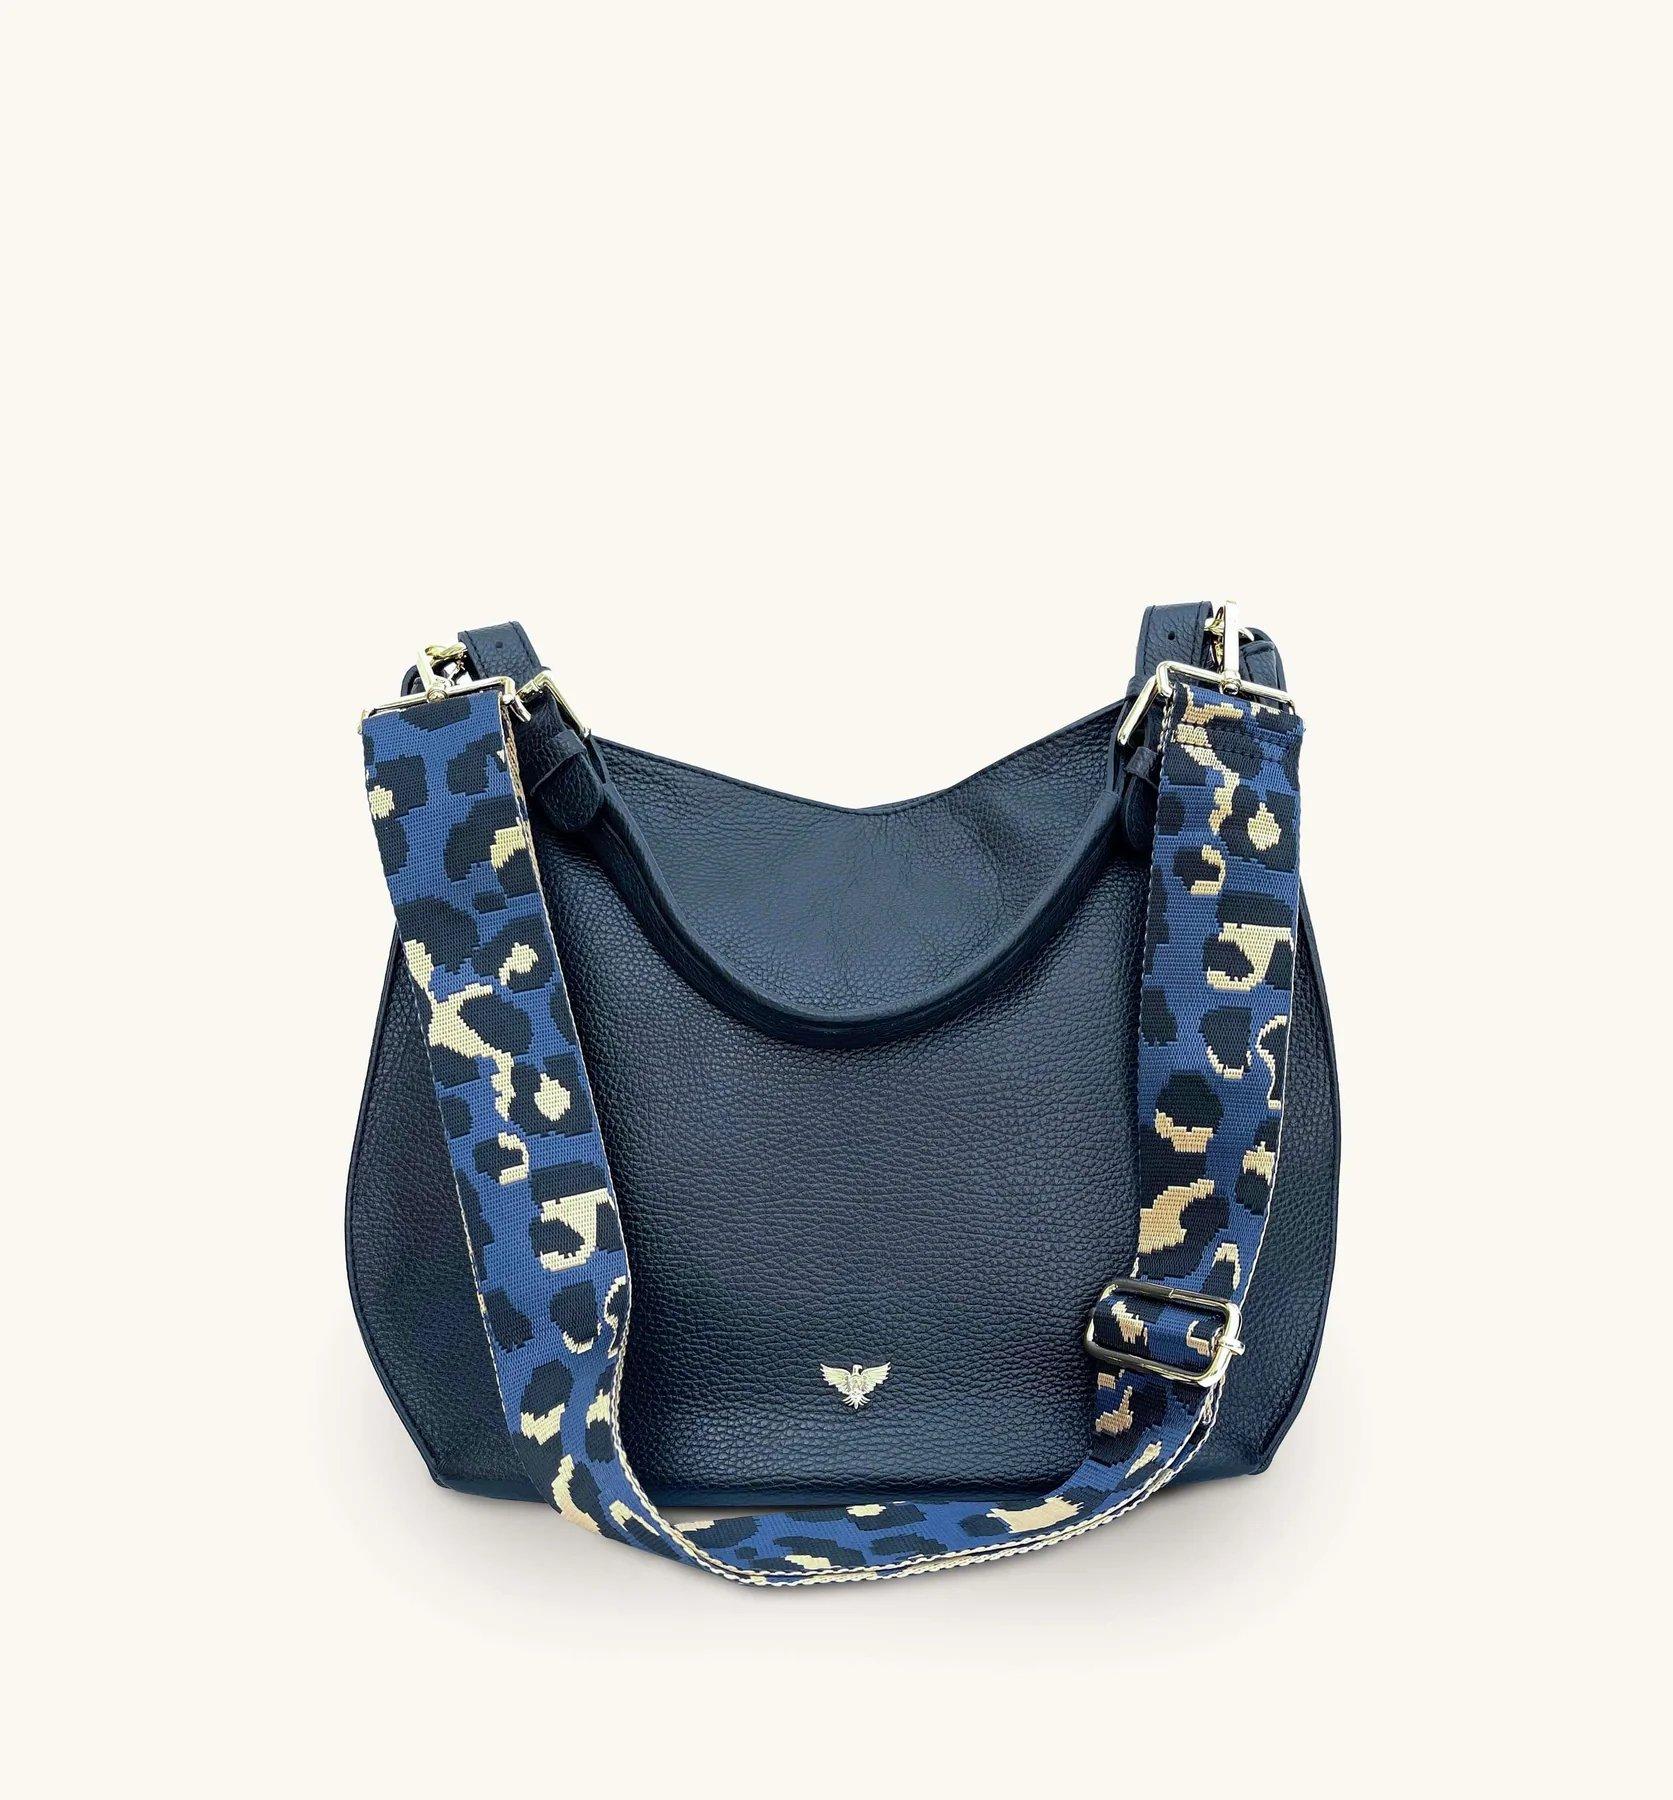 Темно-синяя кожаная сумка Harriet с темно-синим леопардовым ремешком Apatchy London, темно-синий кожаная сумка из италии